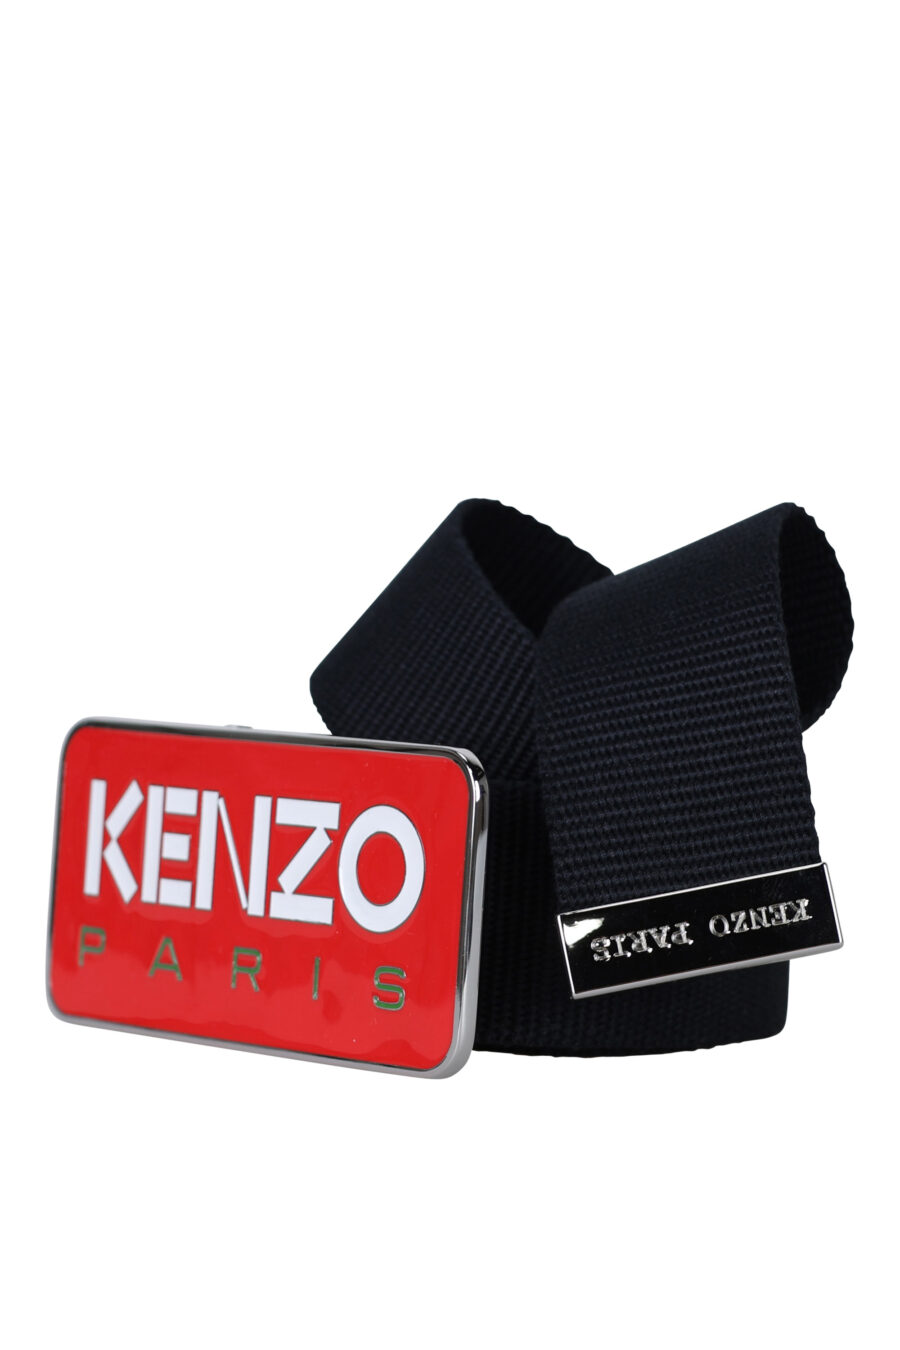 Ceinture noire avec boucle rouge logo "kenzo paris" - 3612230547339 1